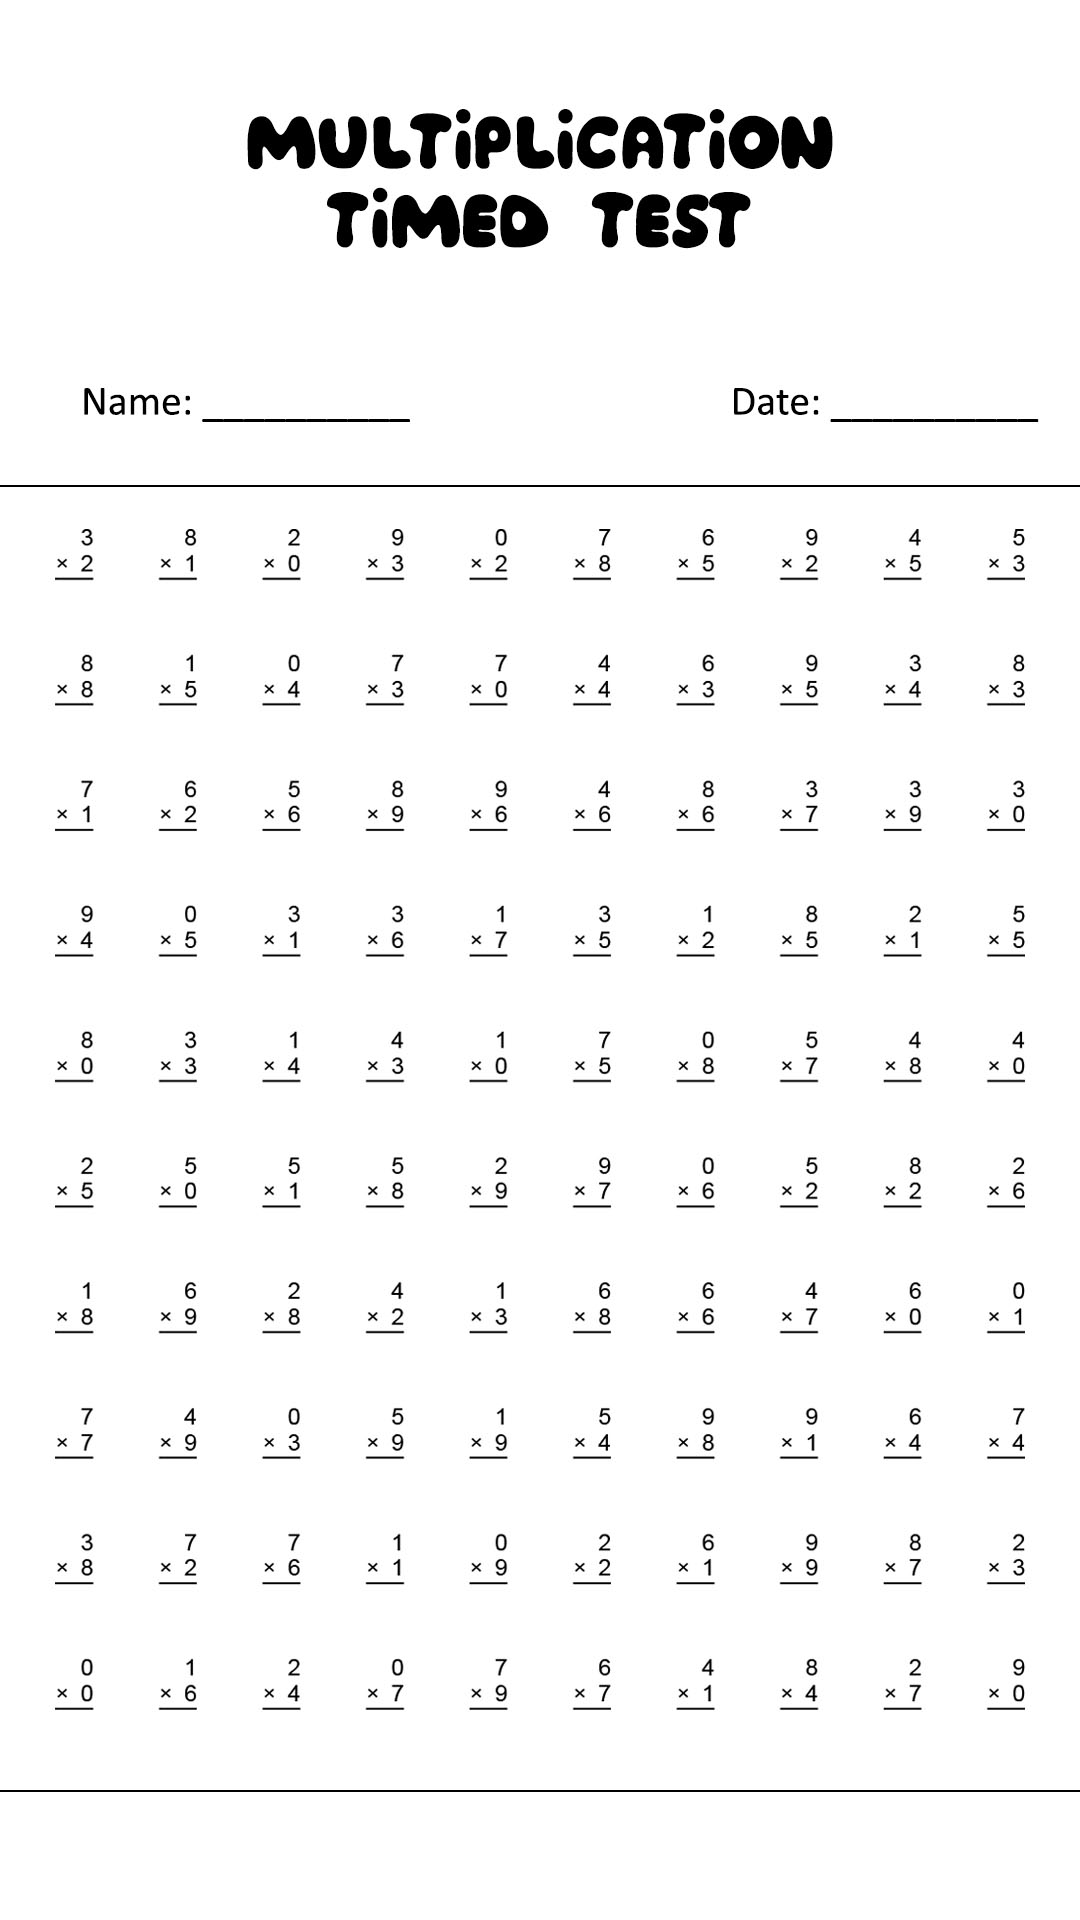 100 Problem Multiplication Timed Test Image